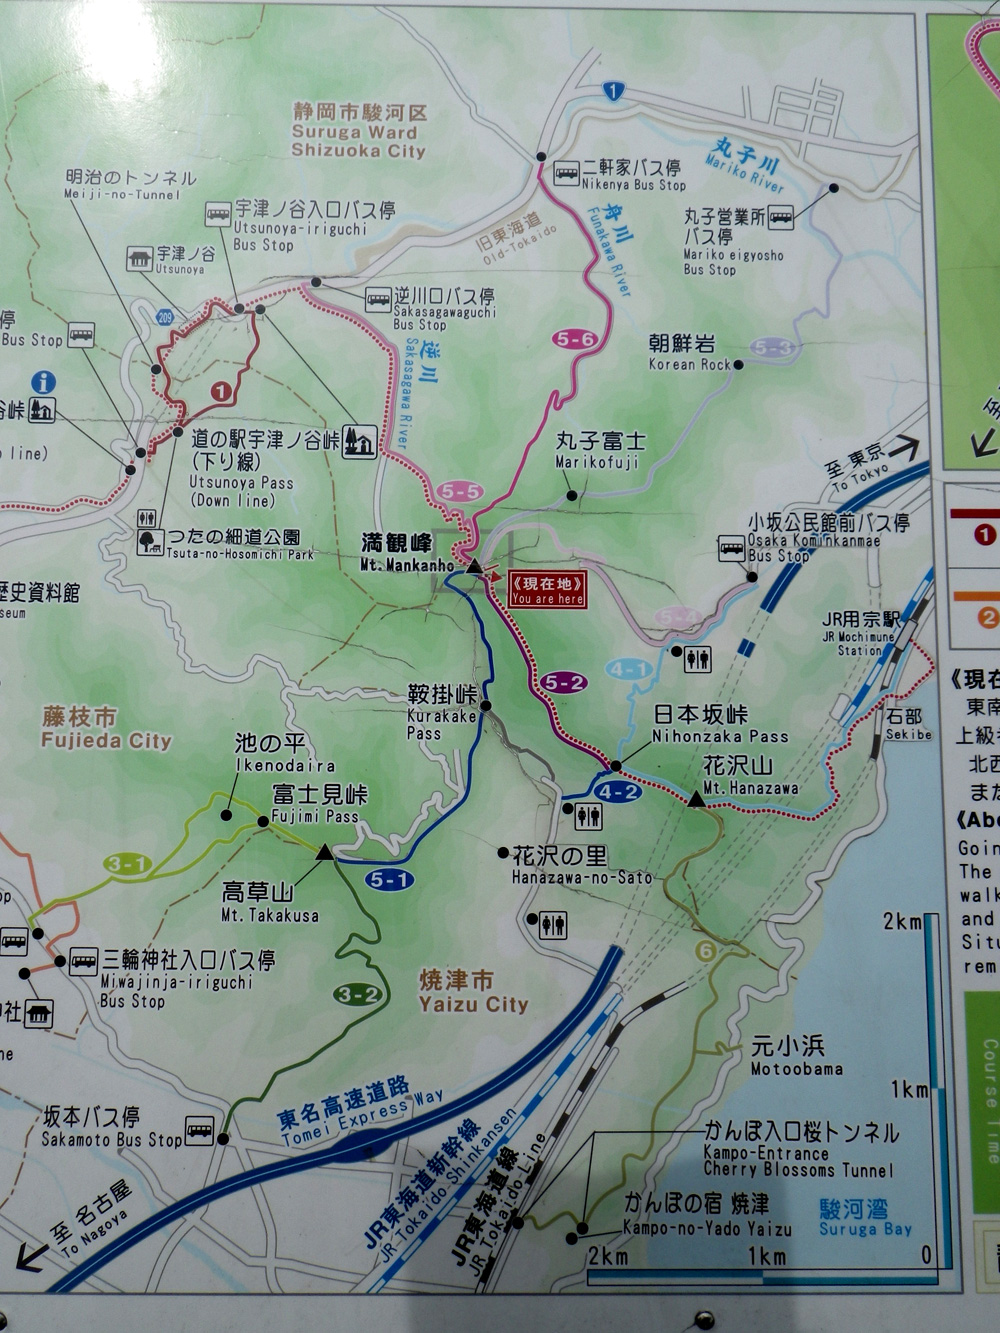 蔦の細道〜満観峰の旅　全体地図。宇津ノ谷から満観峰を経て大崩れ海岸へ